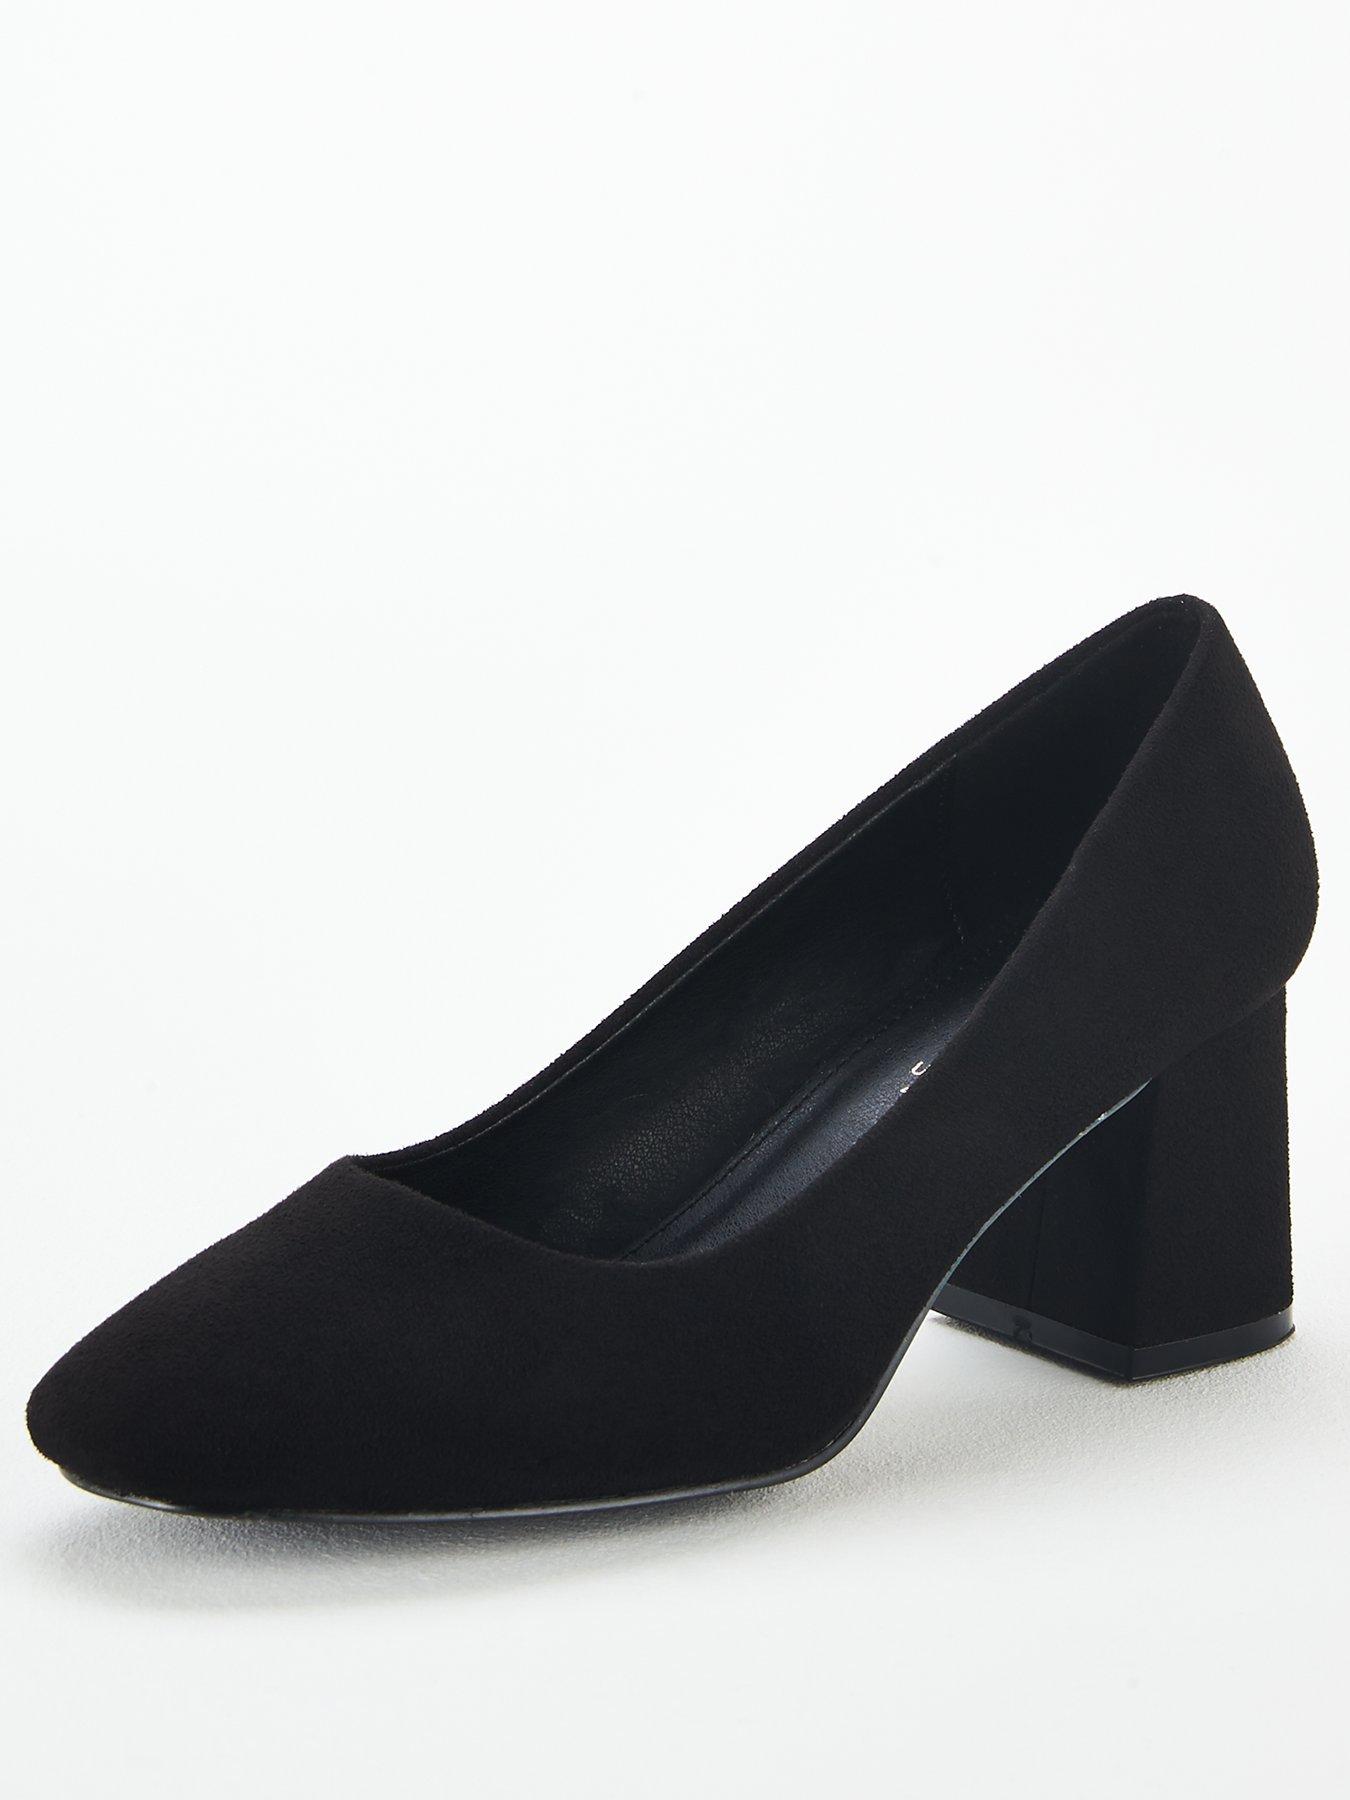 black court shoes ireland